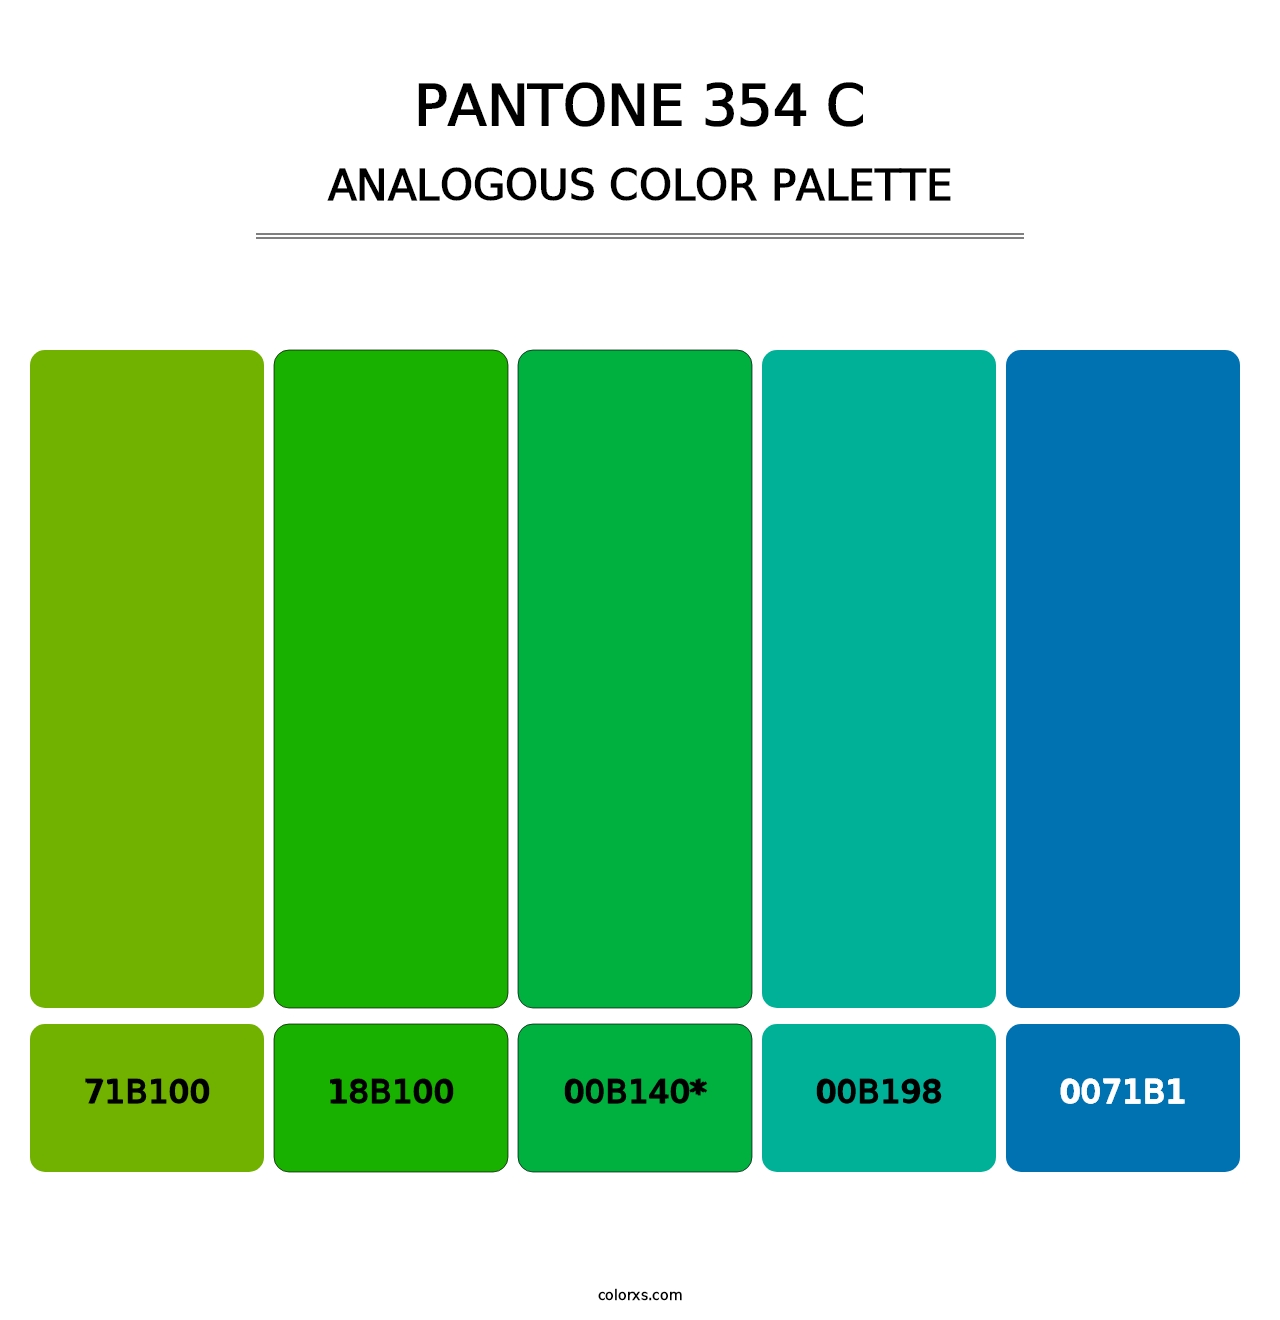 PANTONE 354 C - Analogous Color Palette